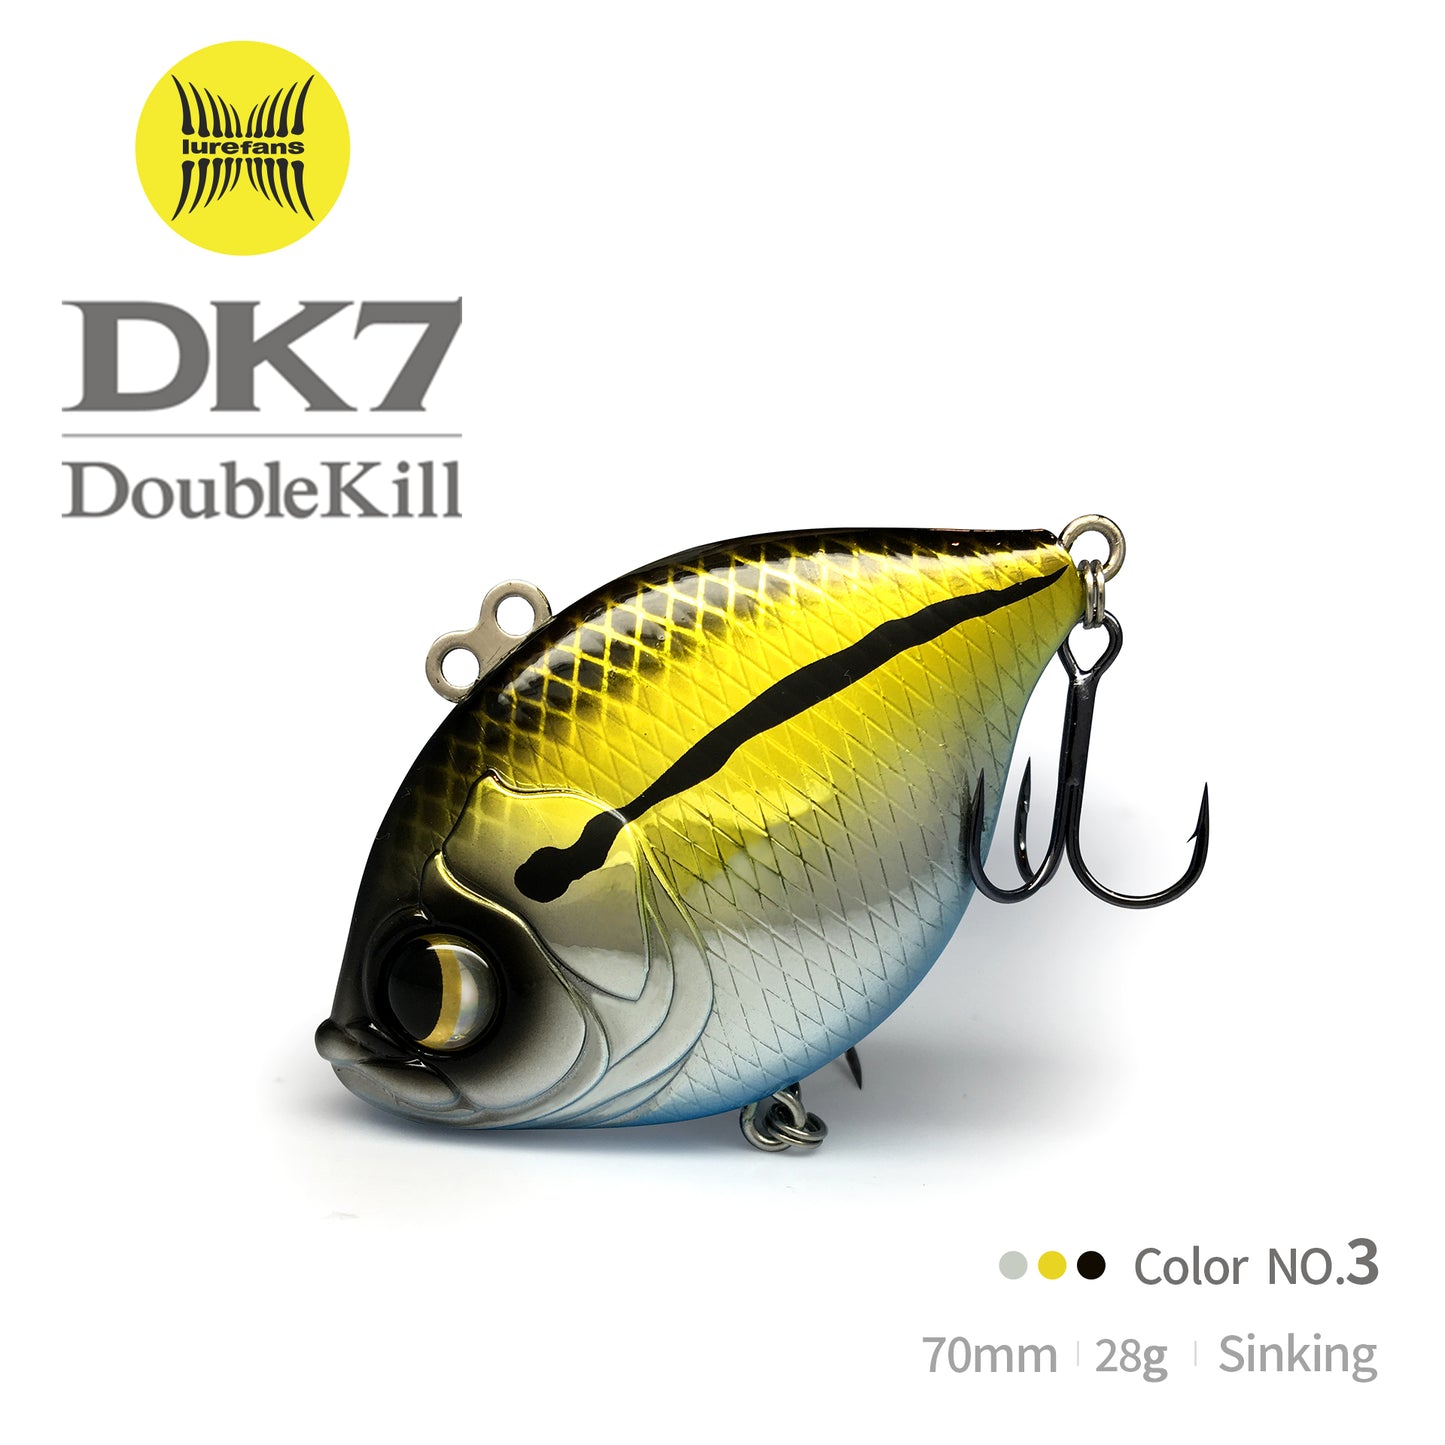 DK7